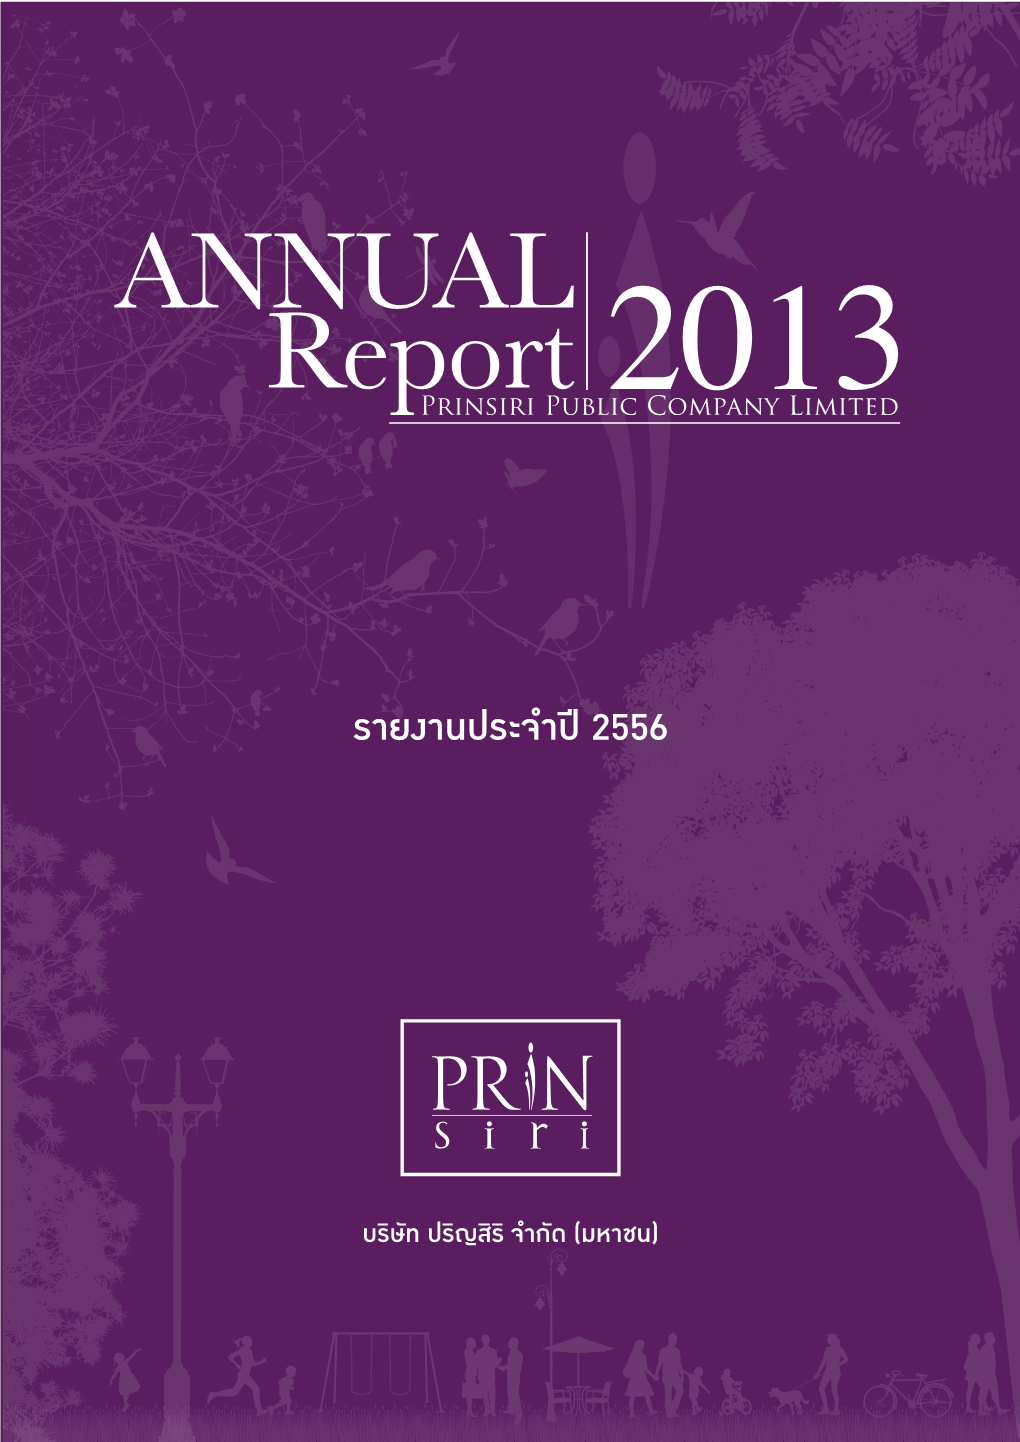 PRIN: Prinsiri Public Company Limited | Annual Report 2013